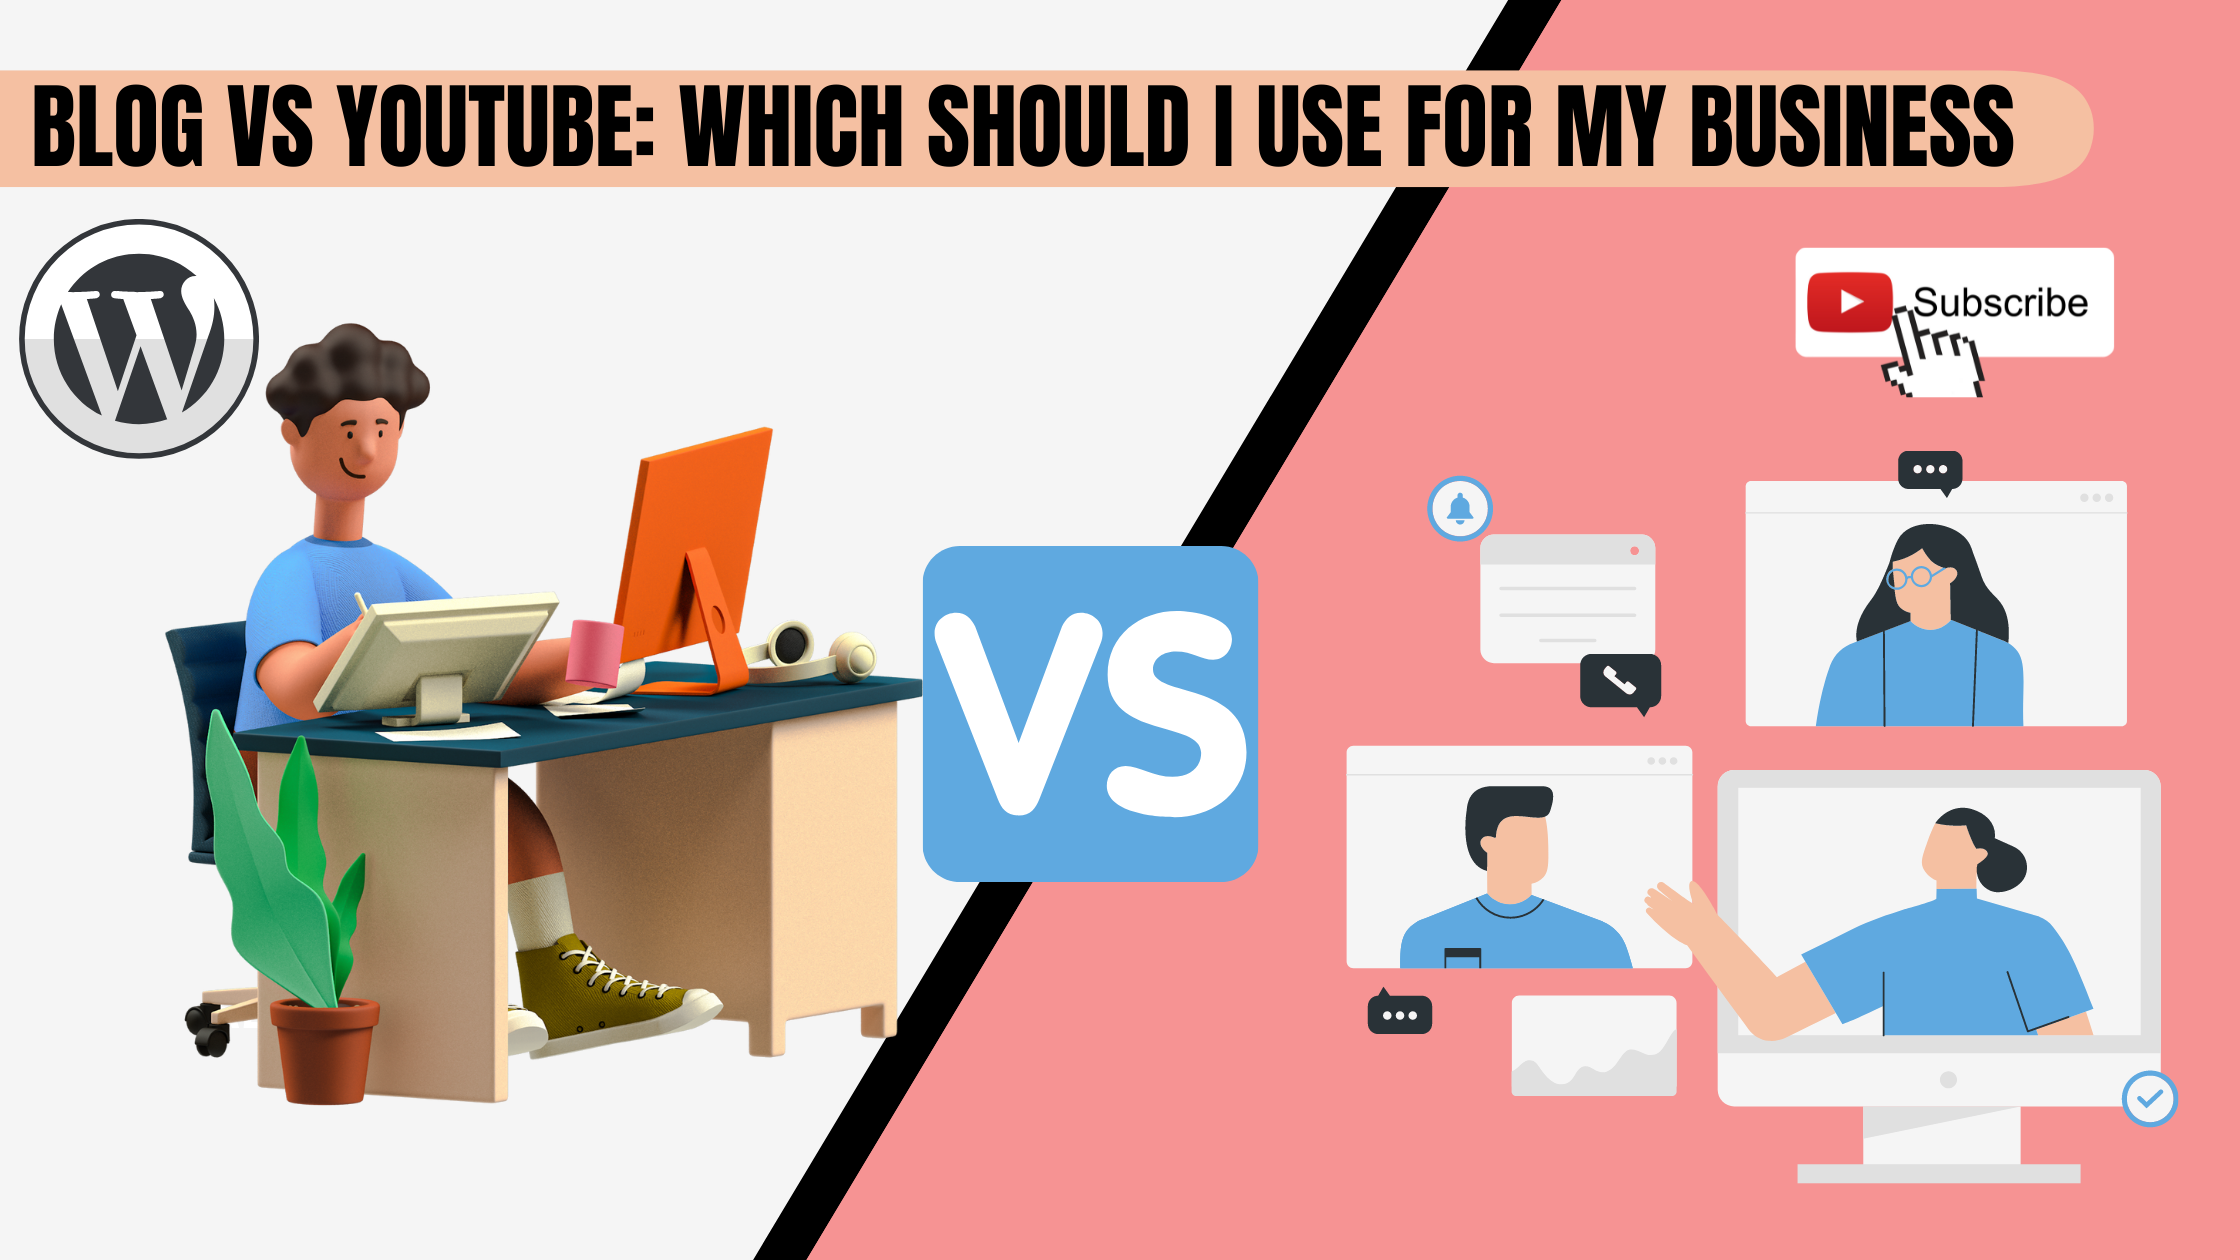 Blog vs youtube